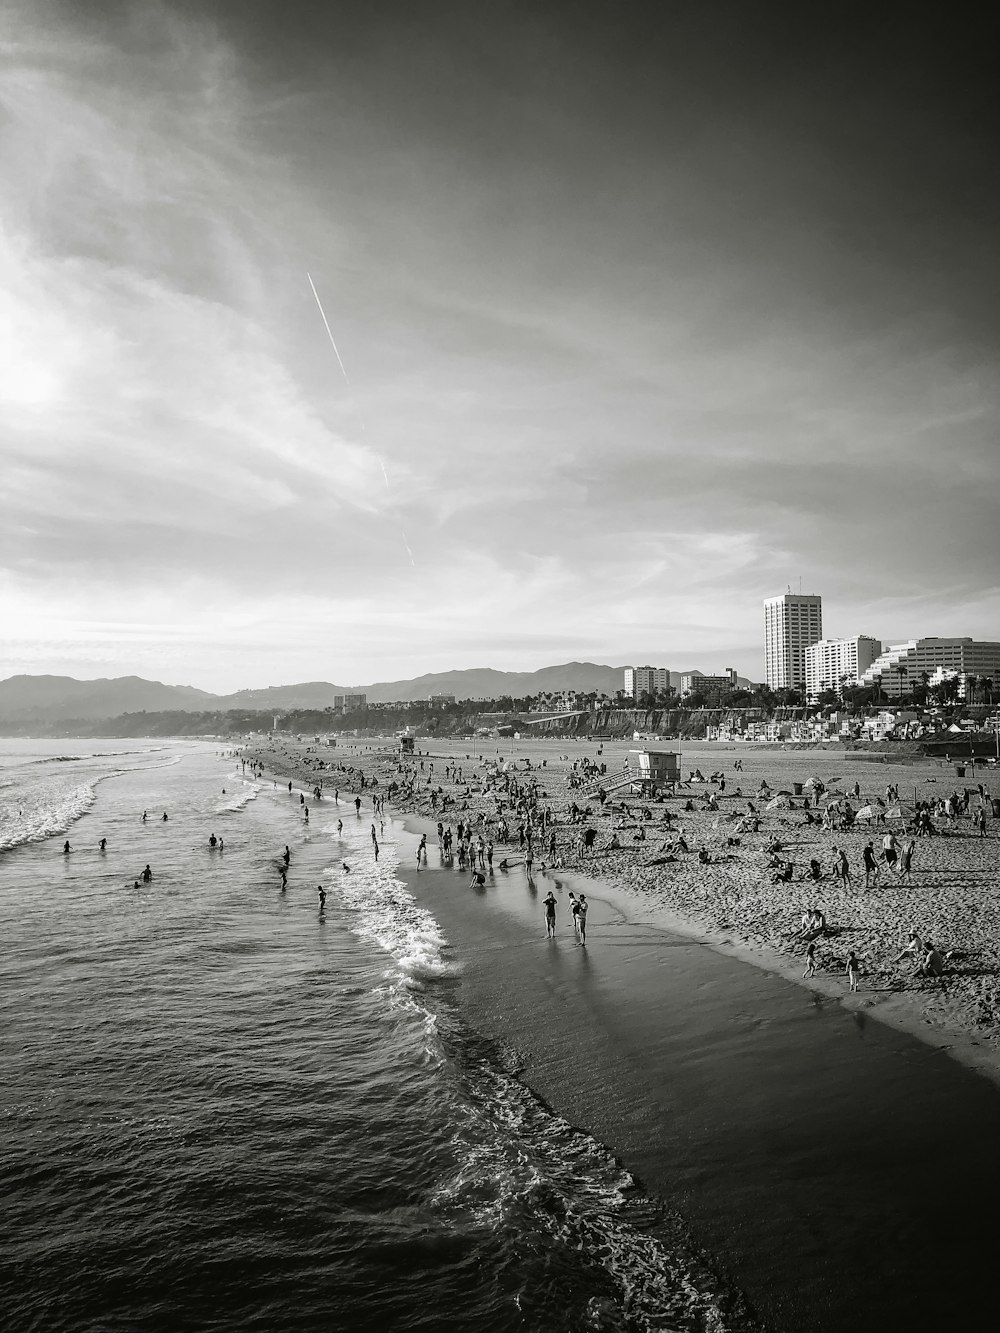 fotografia em tons de cinza de pessoas reunidas perto da costa